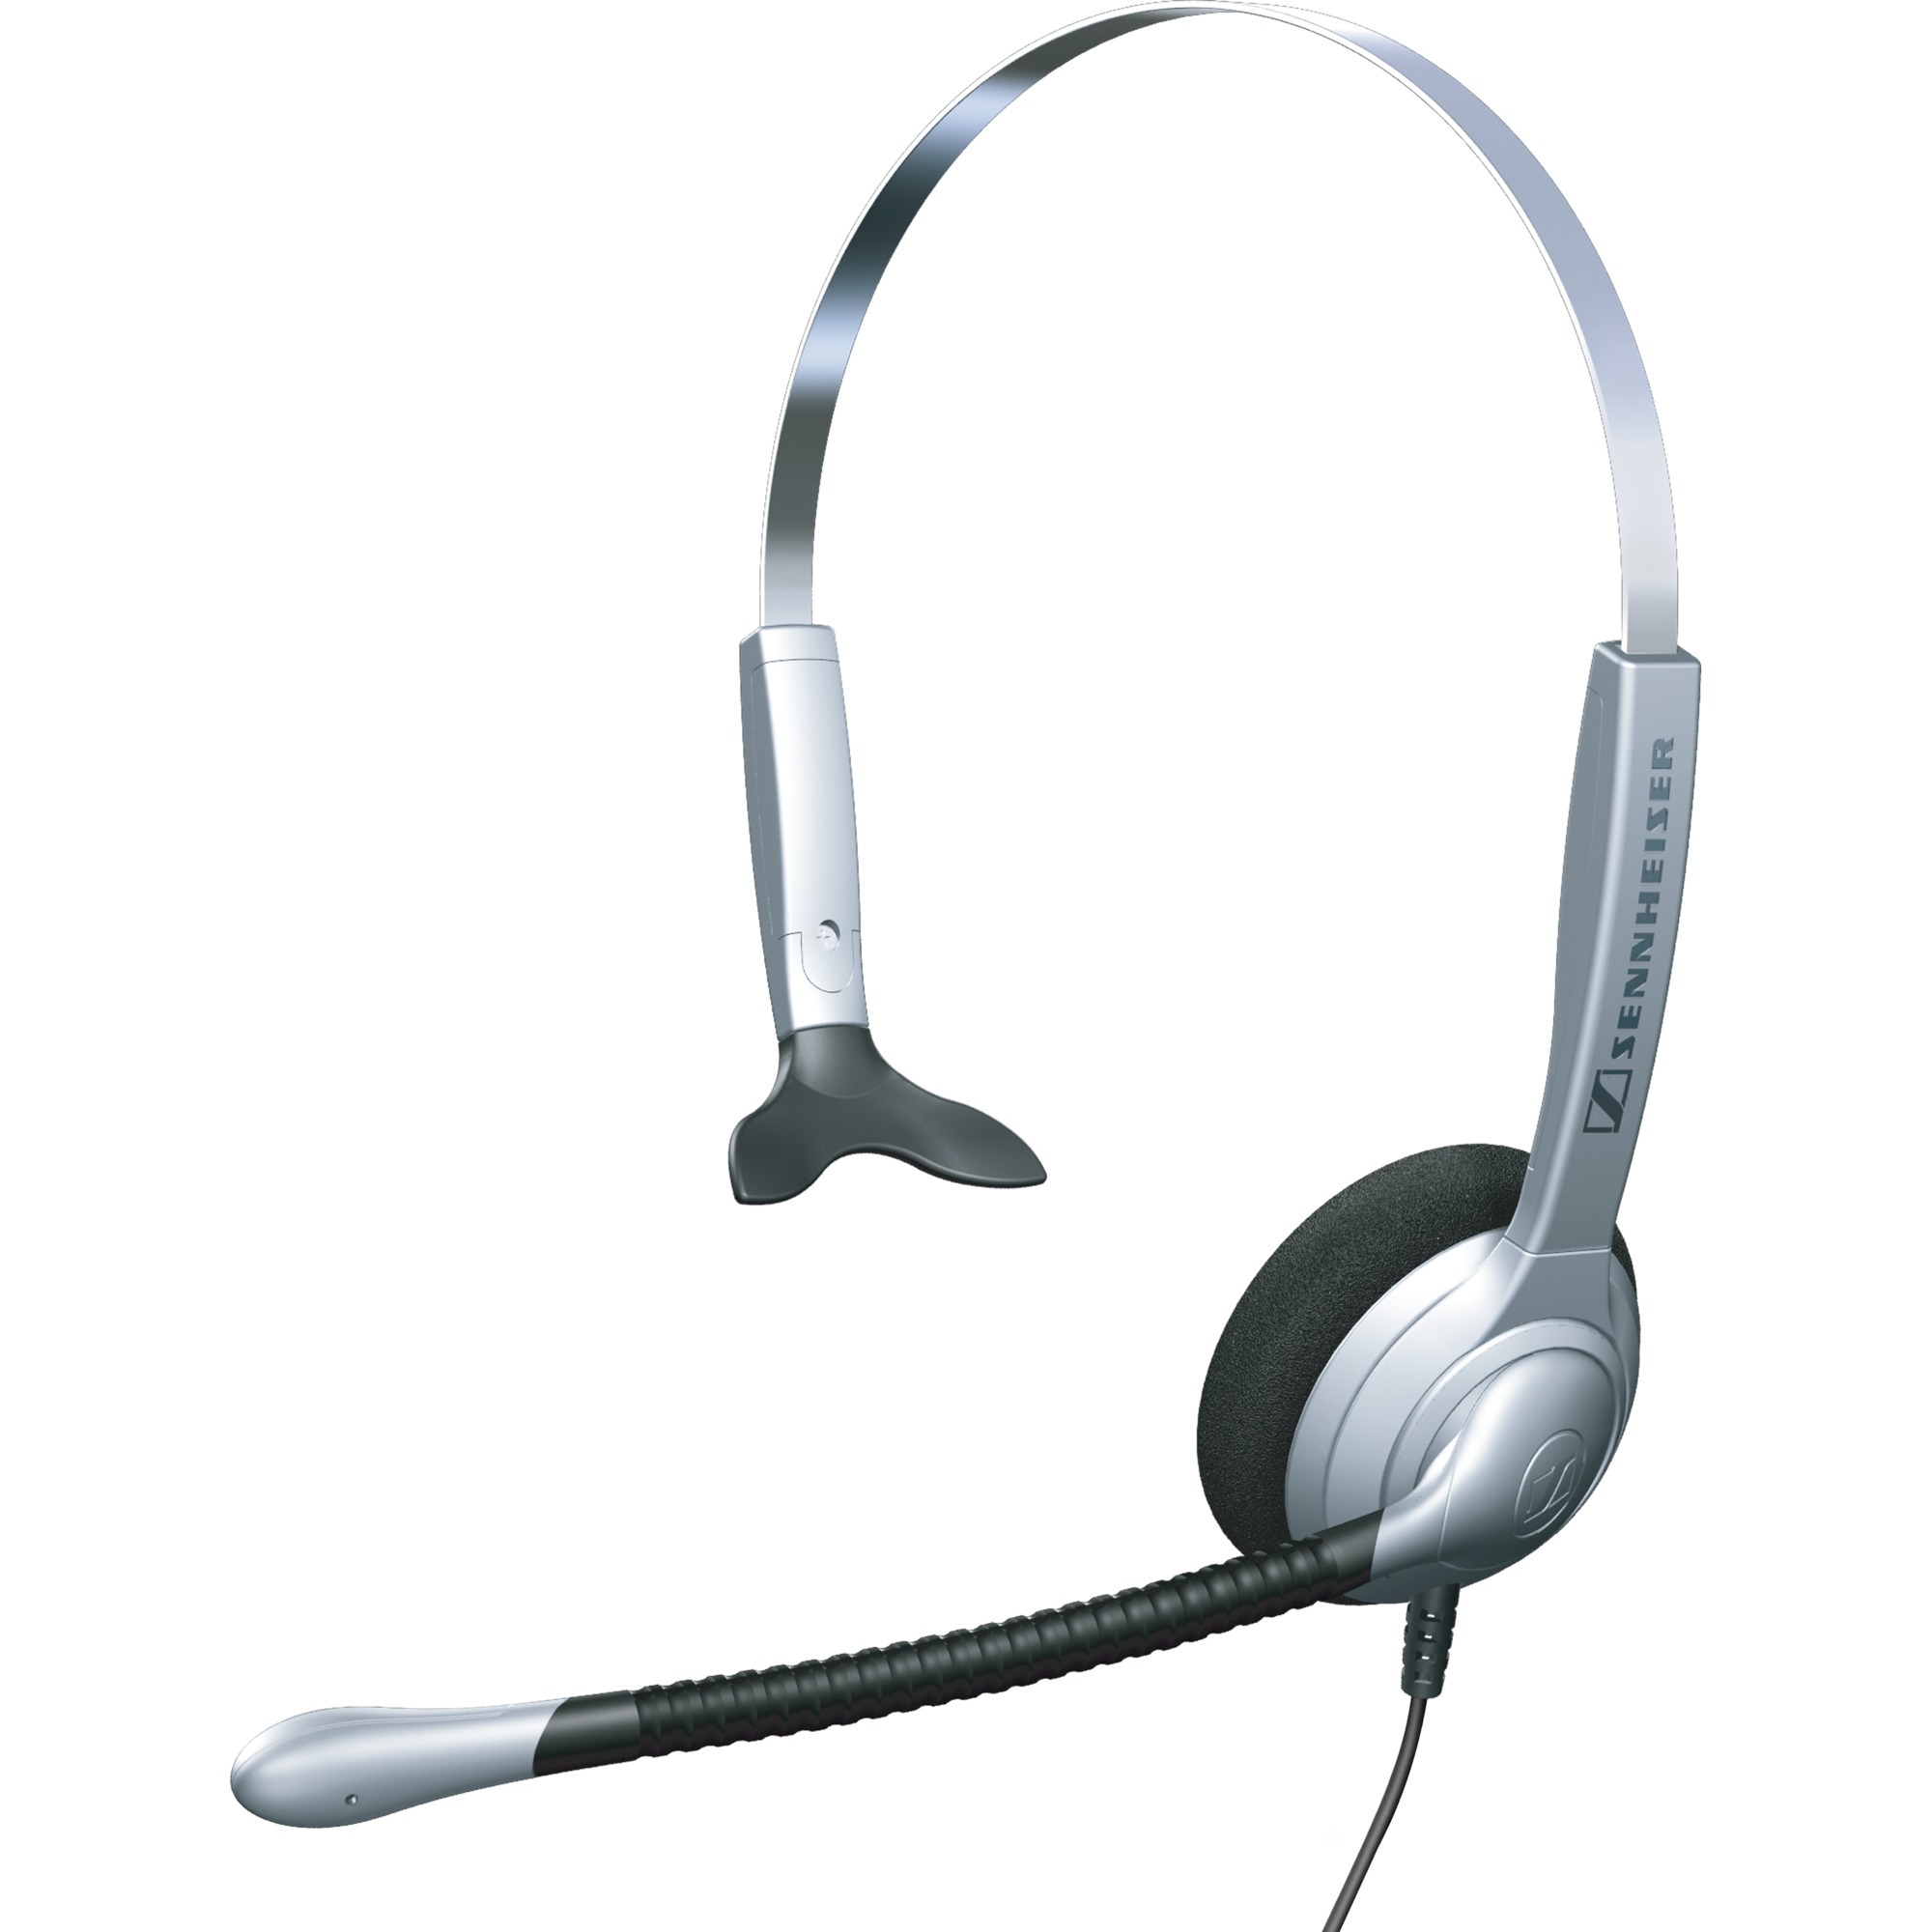 Image of Alternate - SH 330, Headset online einkaufen bei Alternate